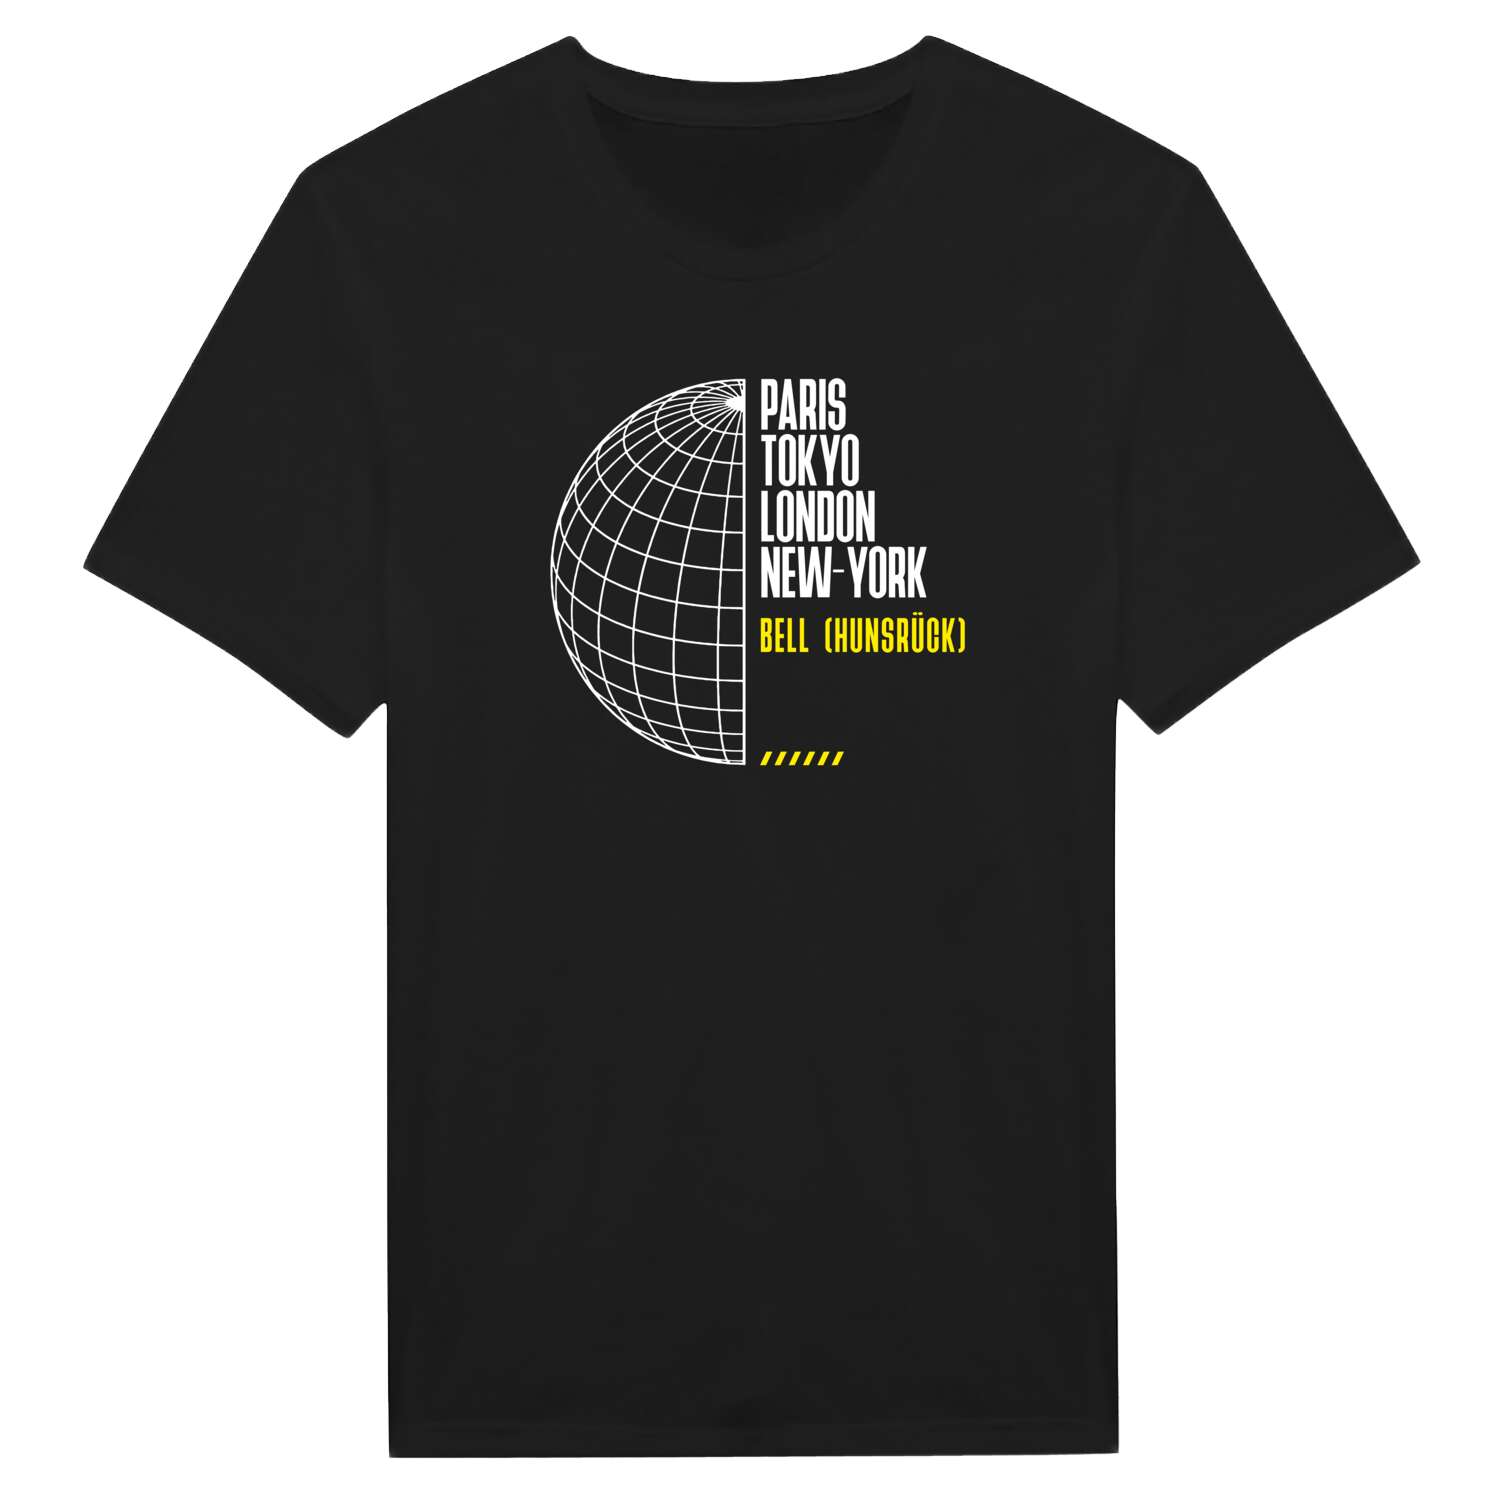 Bell (Hunsrück) T-Shirt »Paris Tokyo London«